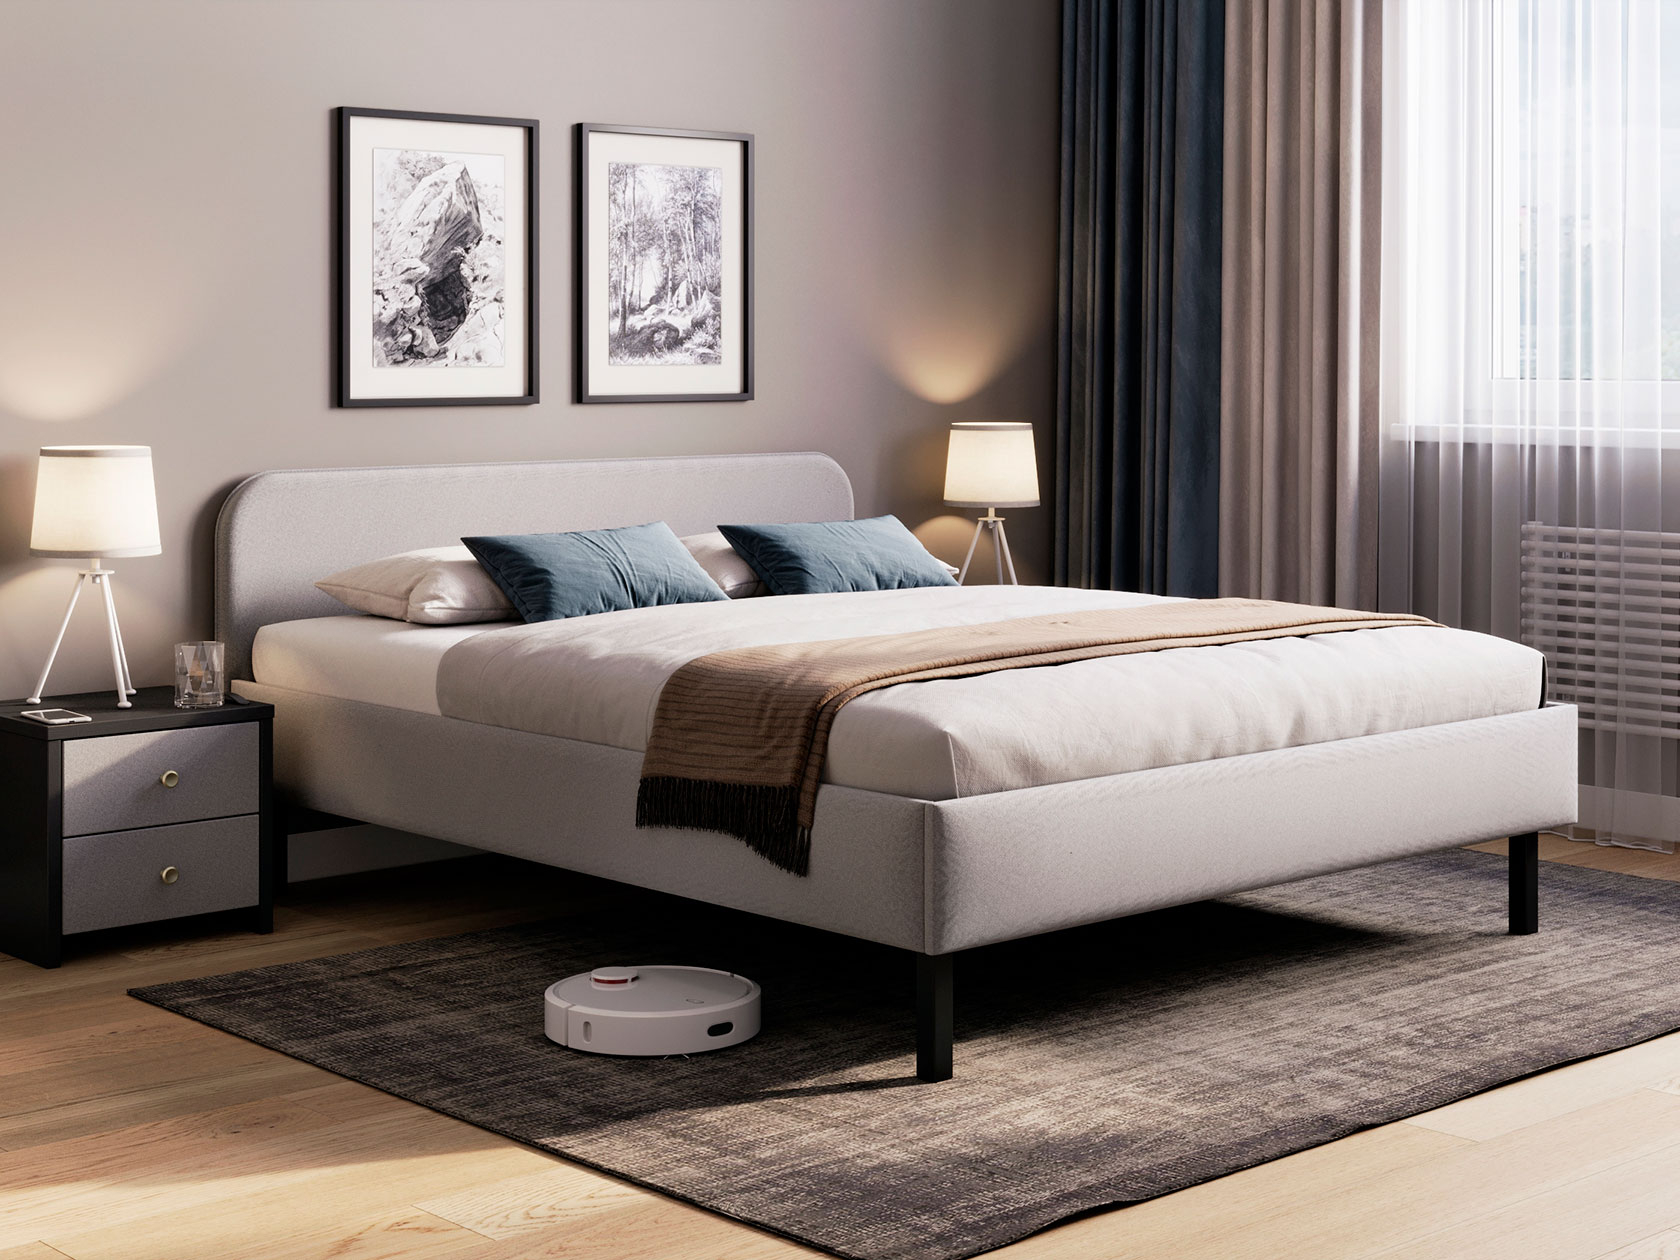 Грамотный дизайн интерьера спальни – залог комфорта и уюта, необходимого для полноценного отдыха